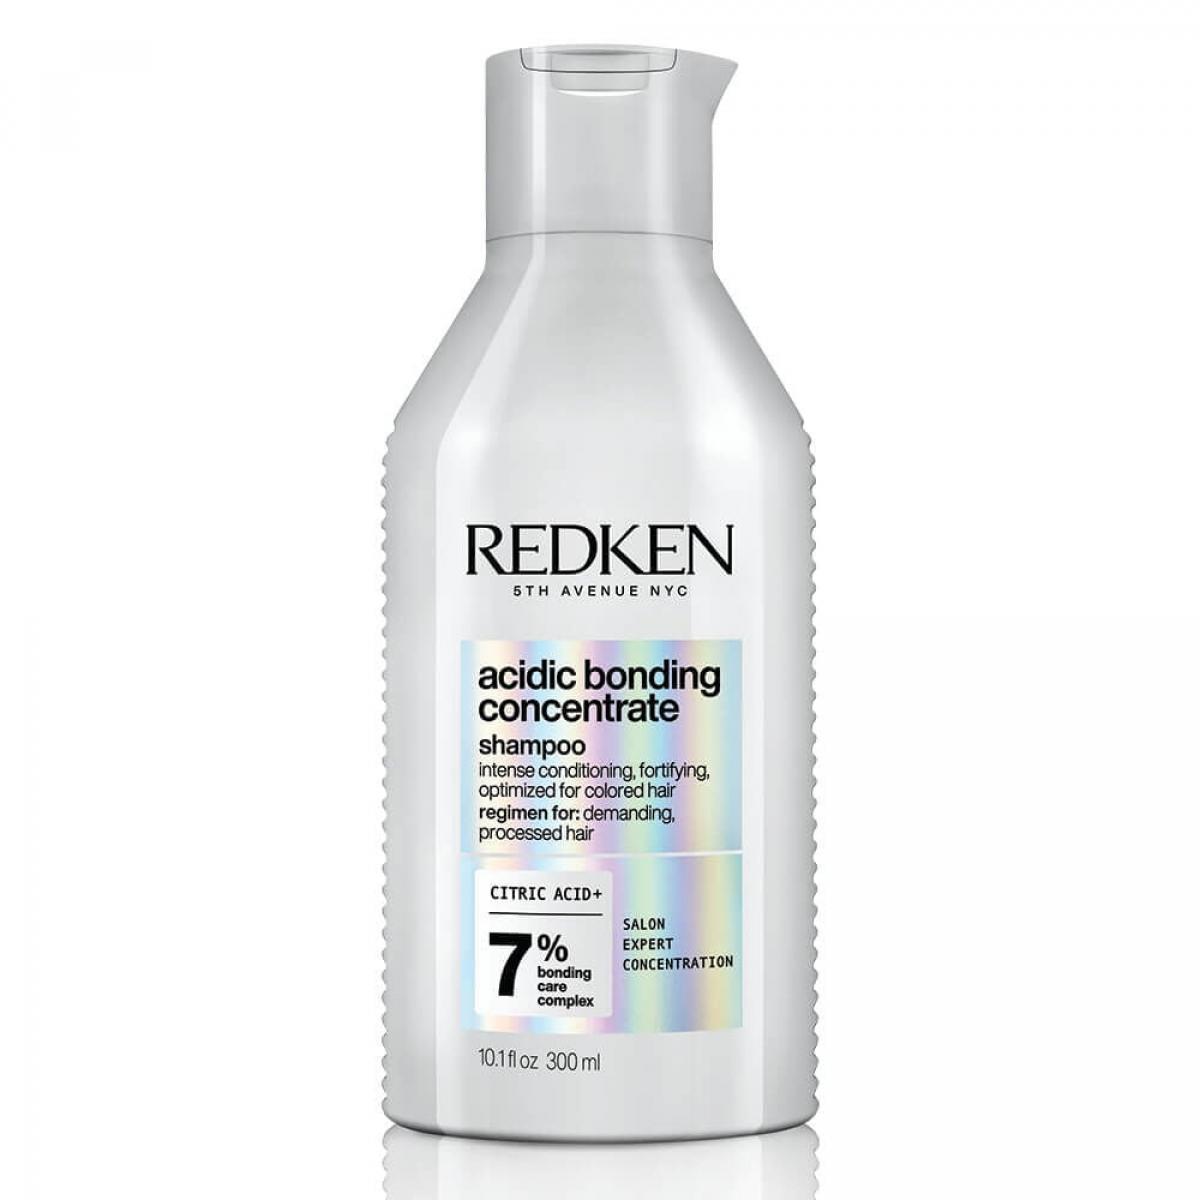 Acidic Bonding Concentrate van Redken